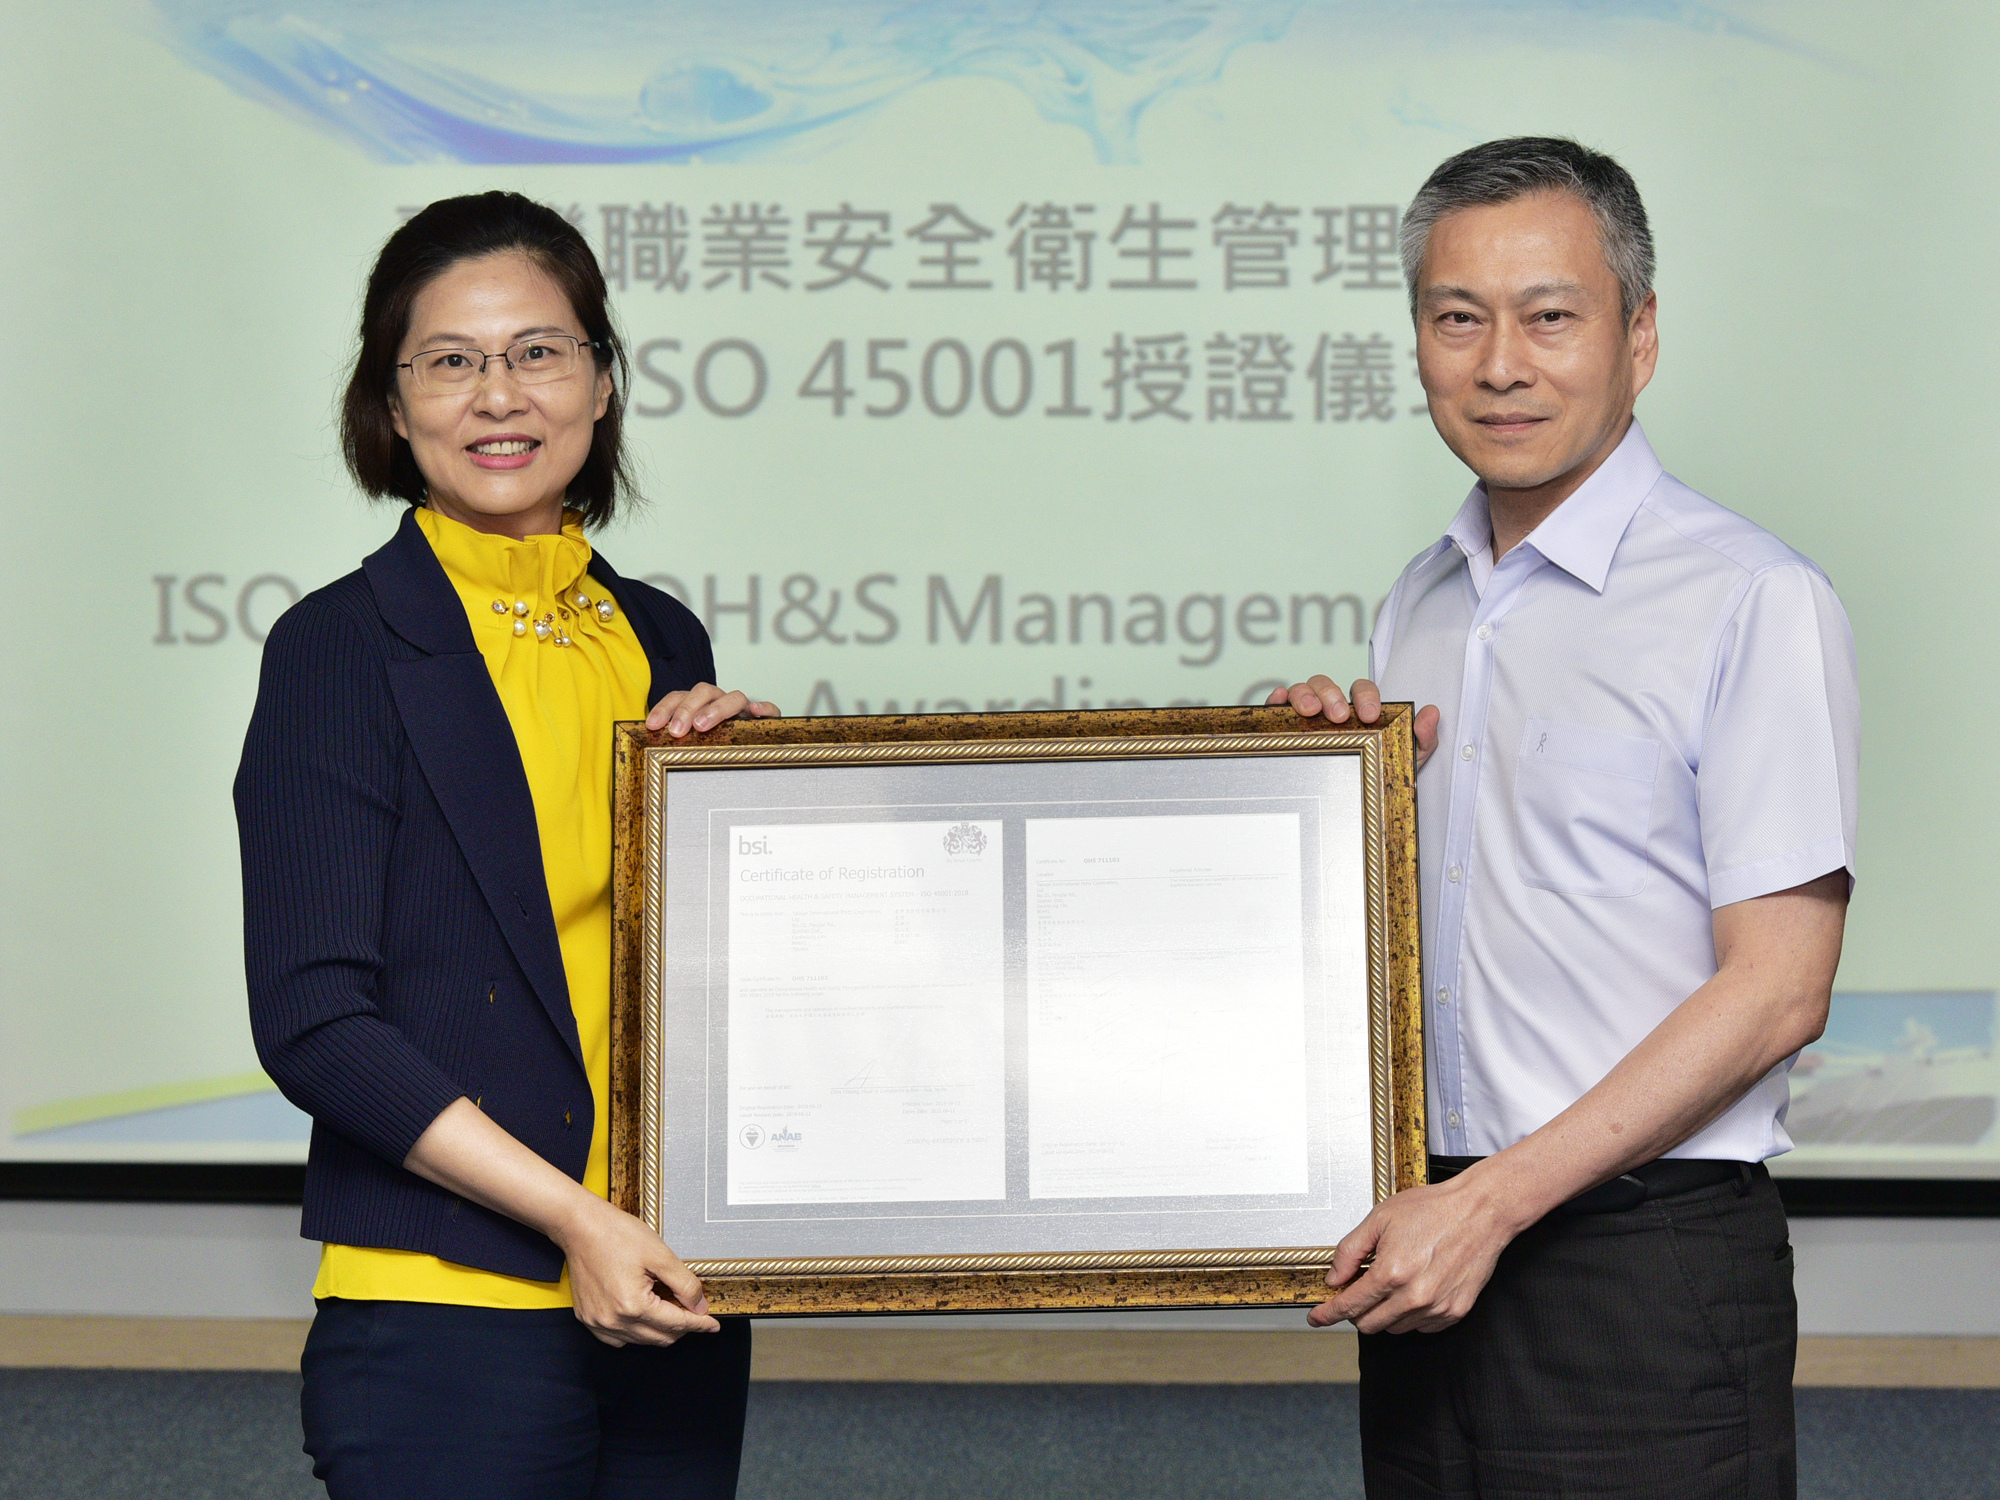 陳劭良總經理代表臺灣港務公司接受英國標準協會(BSI)台灣分公司張嘉倫協理授予證書